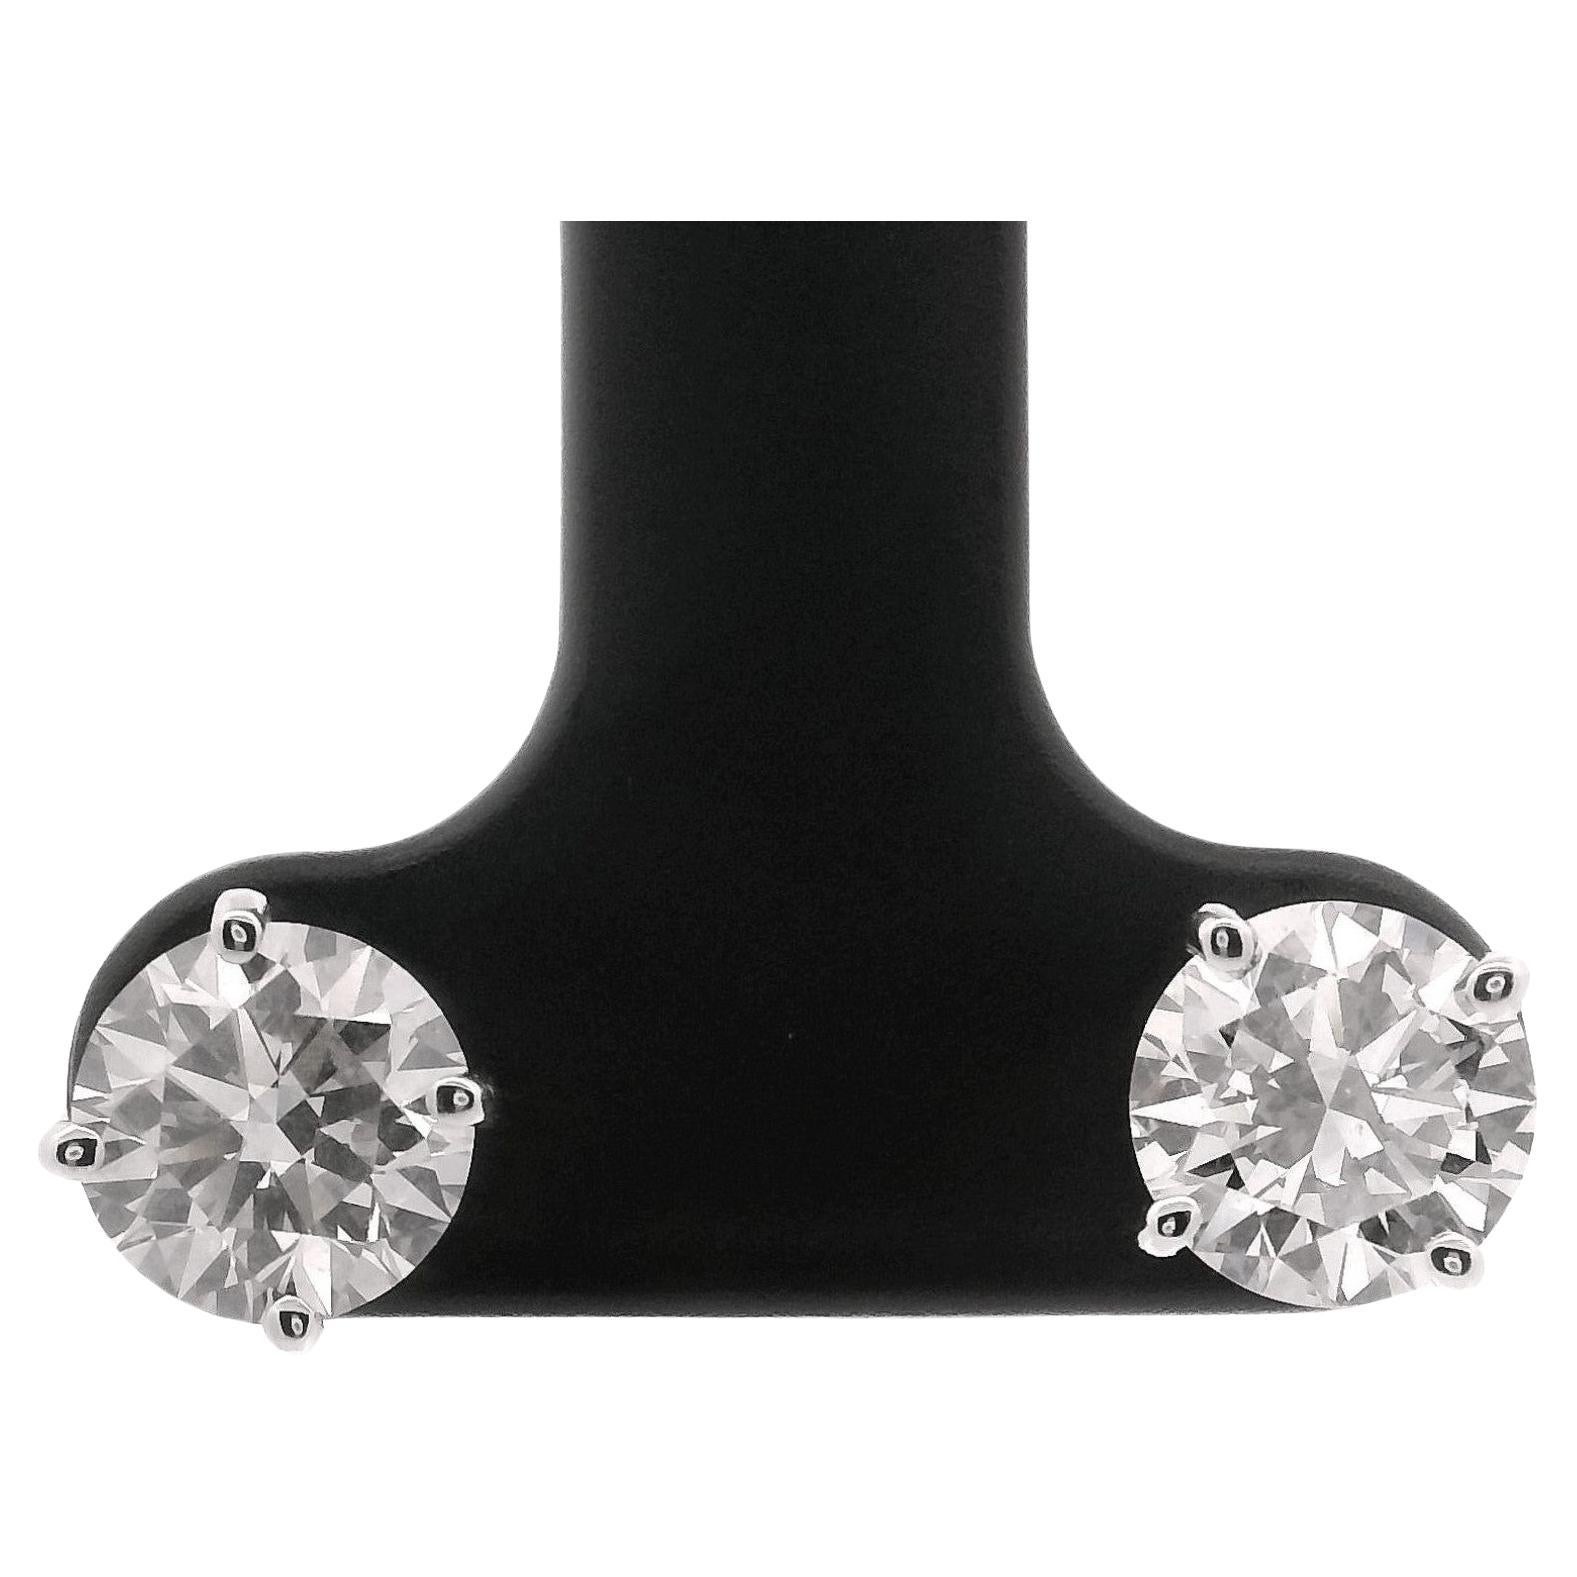 Brand New 2cttw Natural Diamond Stud Earrings in 14k White Gold